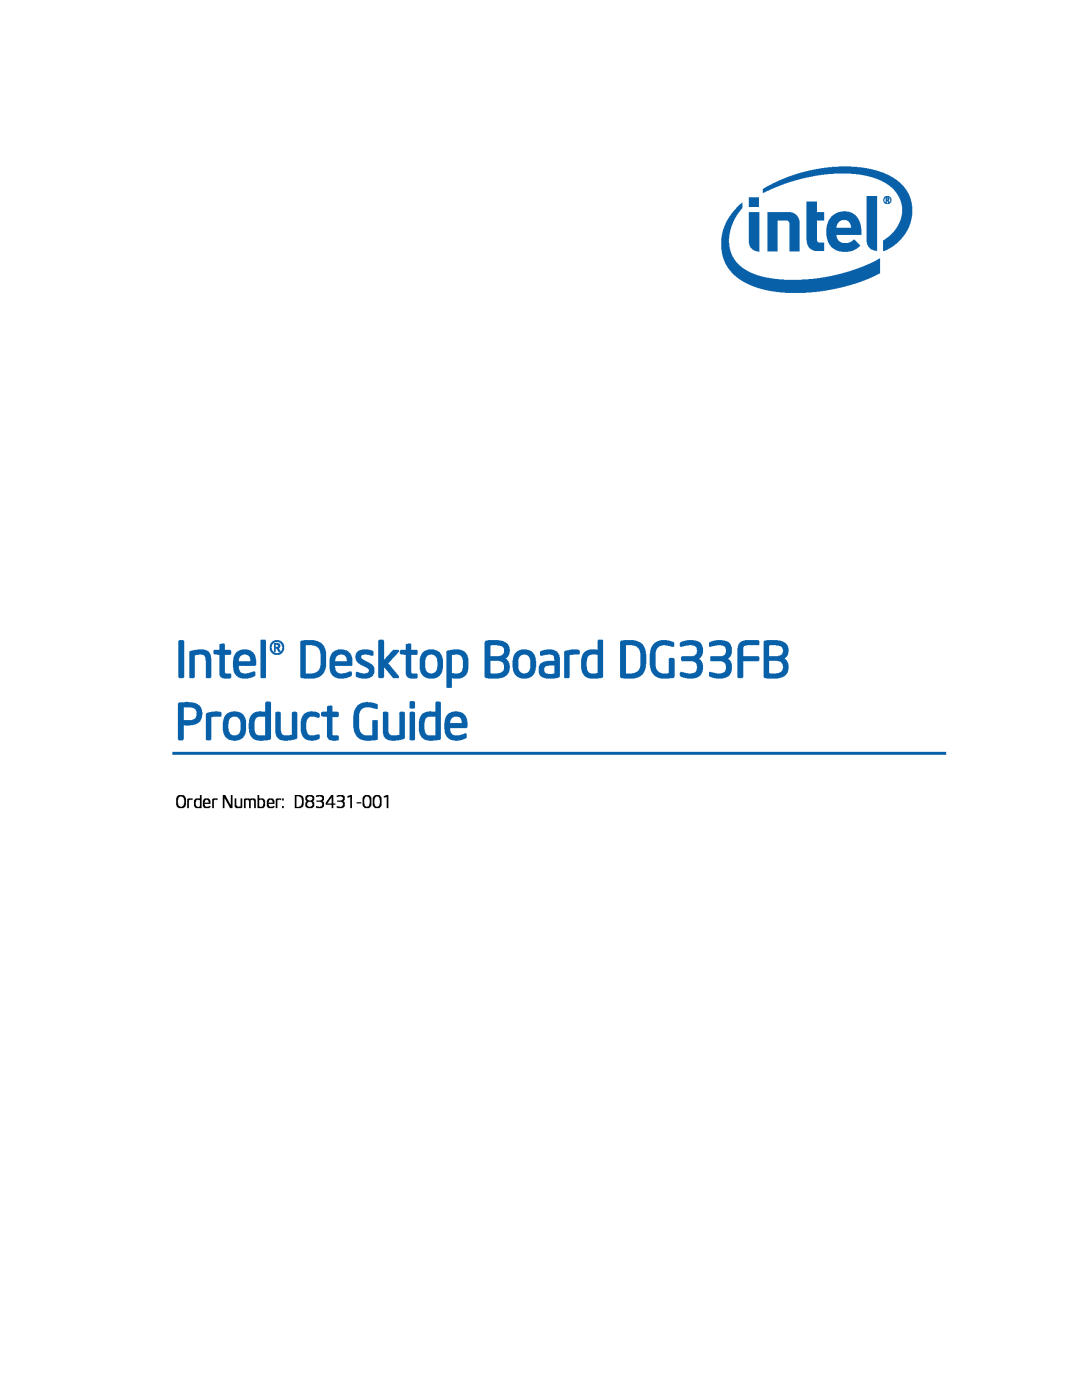 Intel manual Intel Desktop Board DG33FB Product Guide, Order Number: D83431-001 